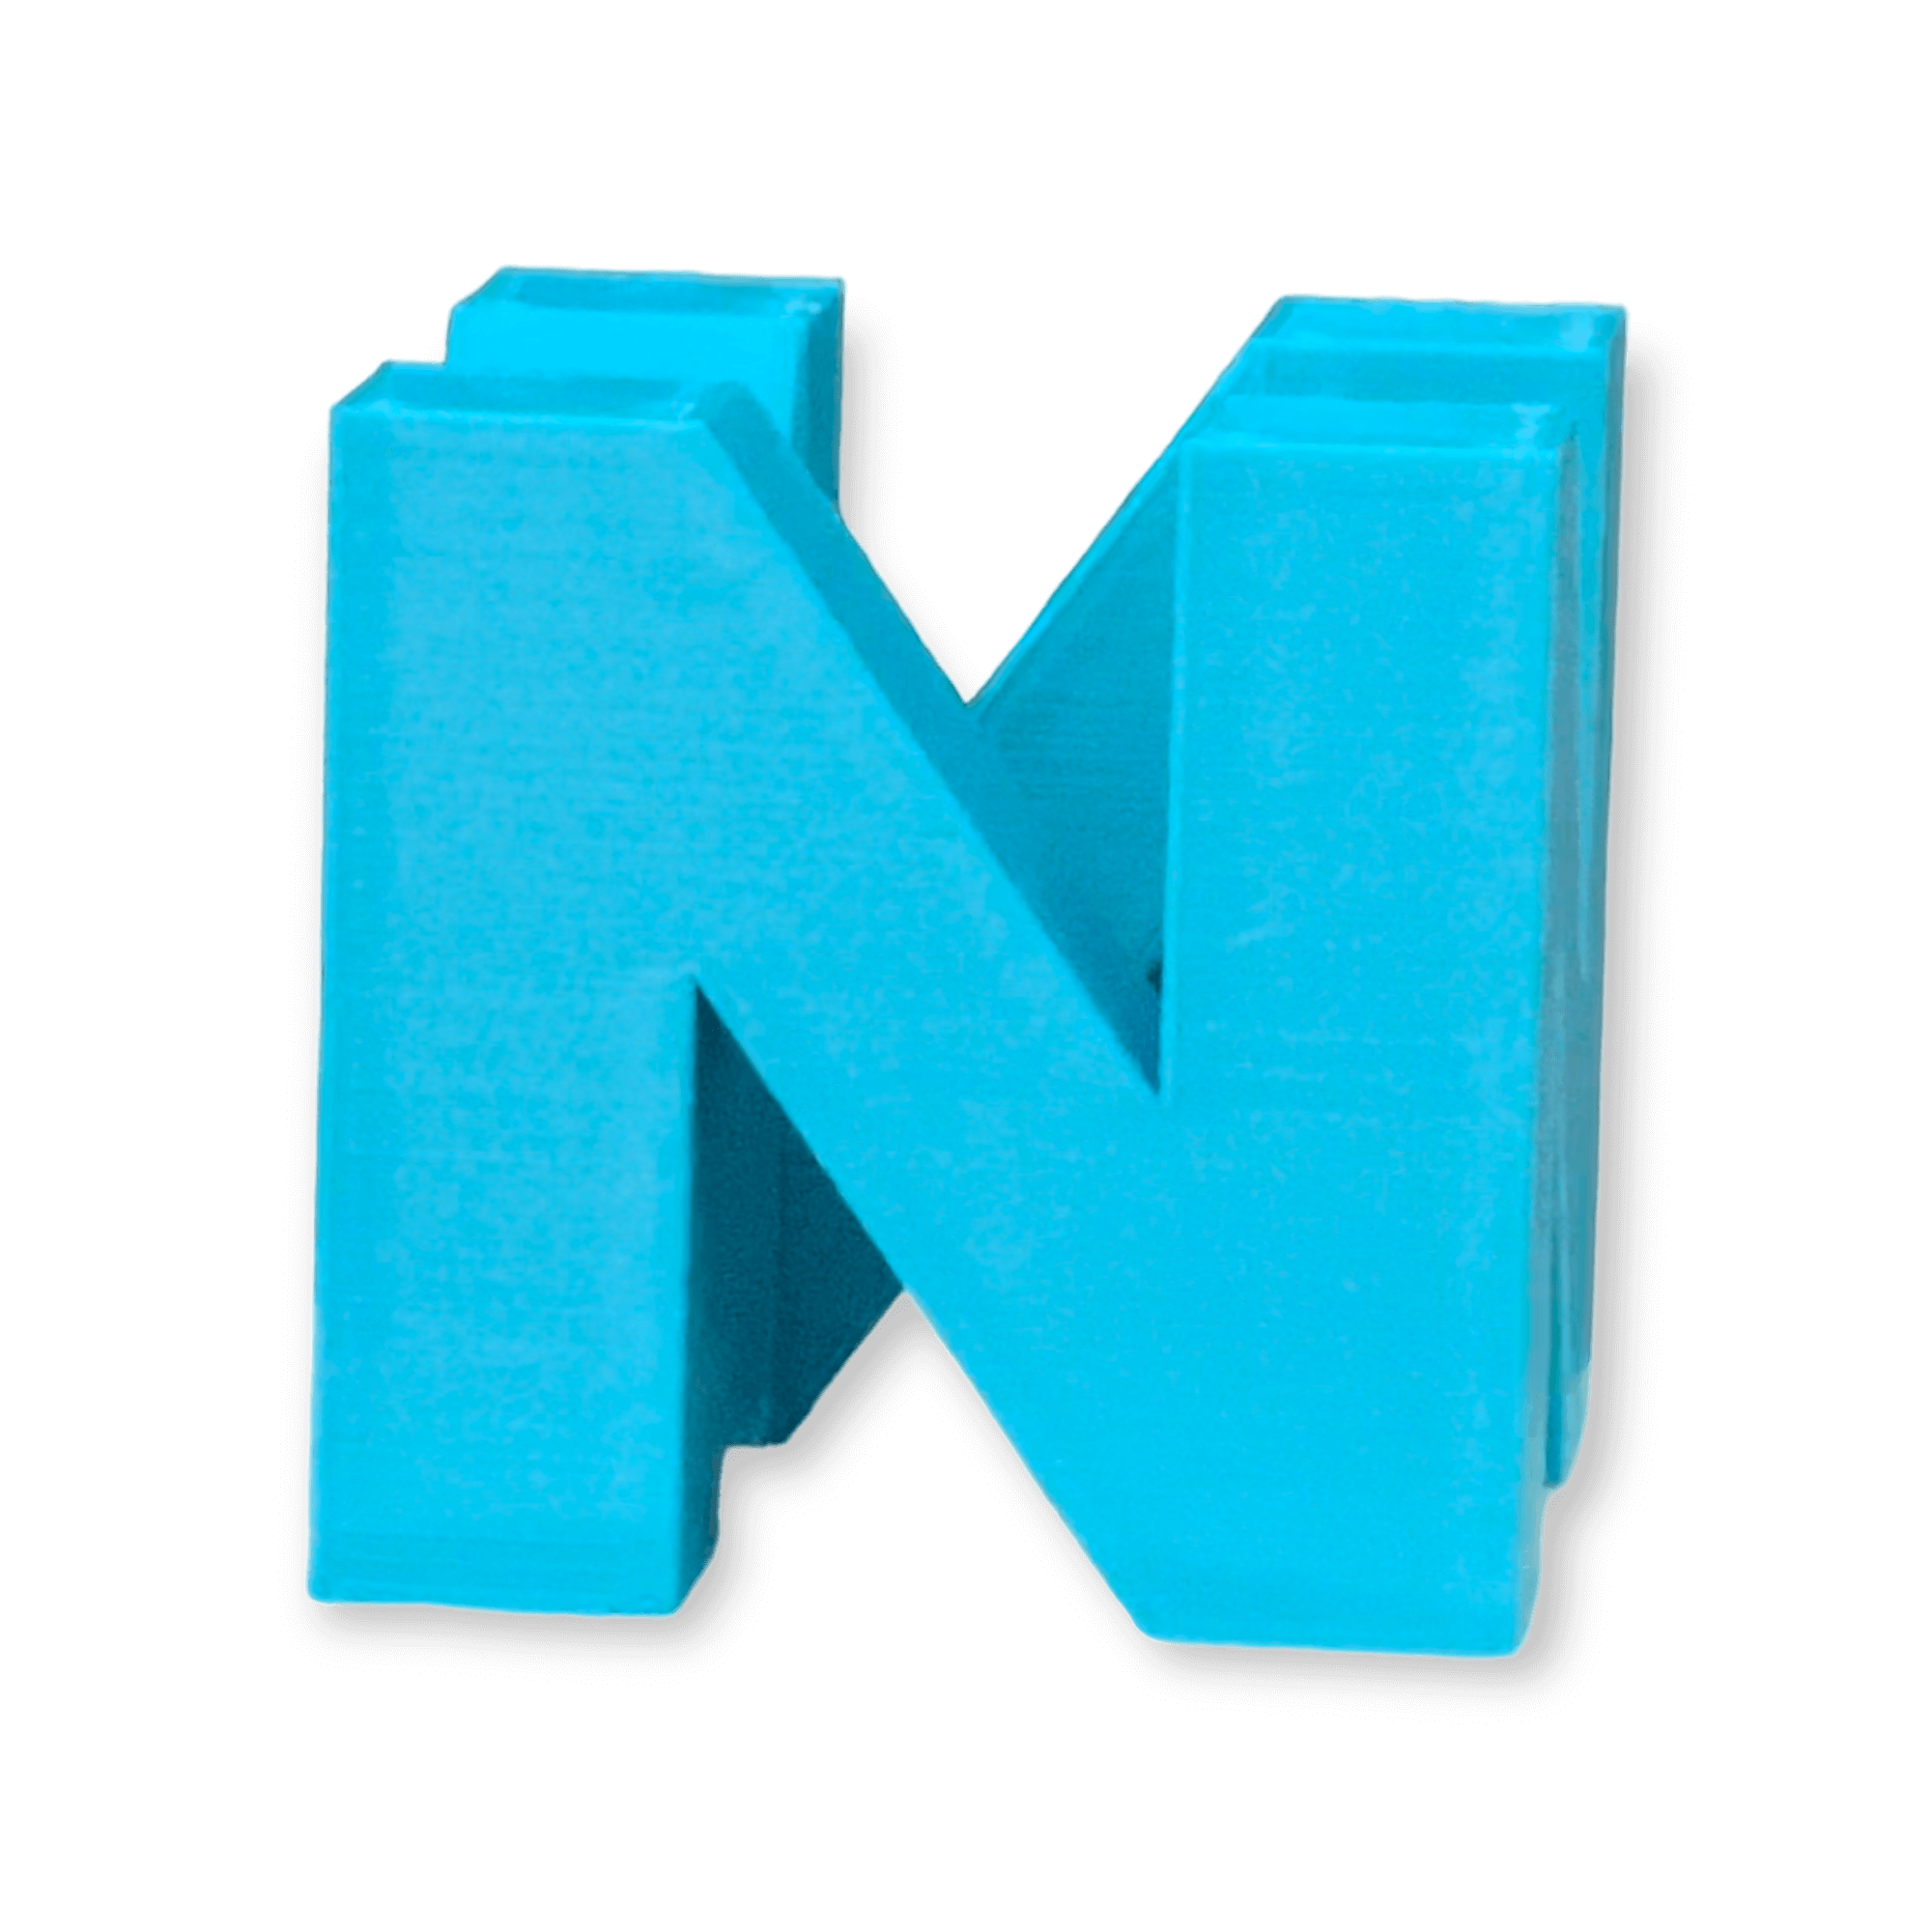 N64 3D Printed Logo2.png